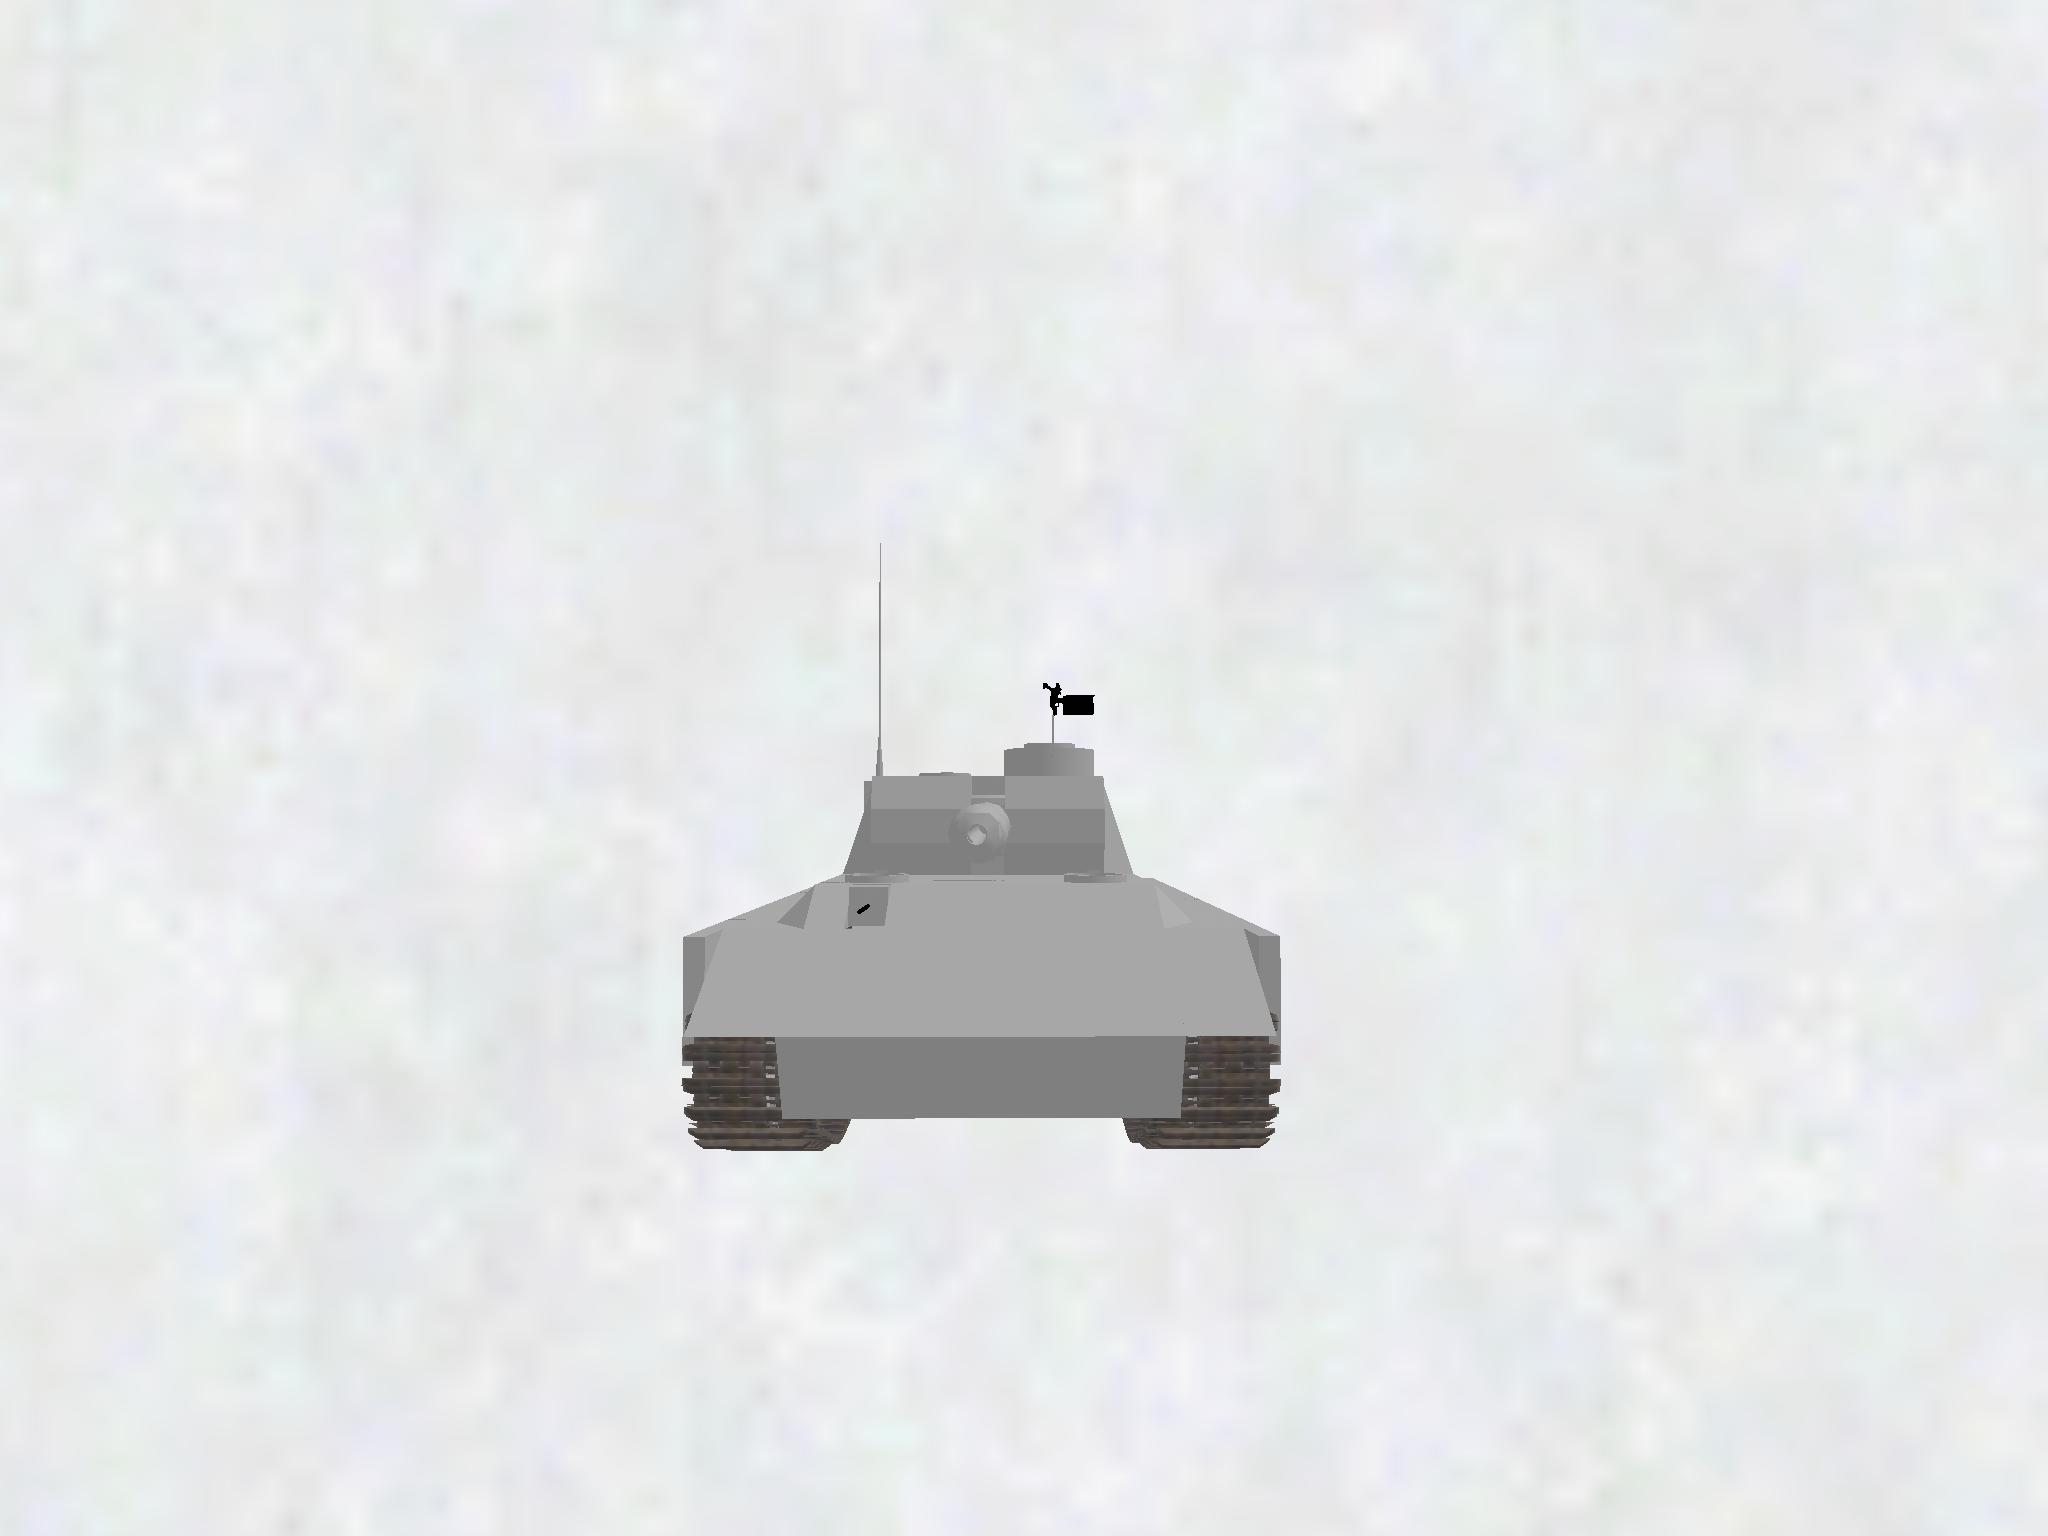 中戦車車体(85MM)